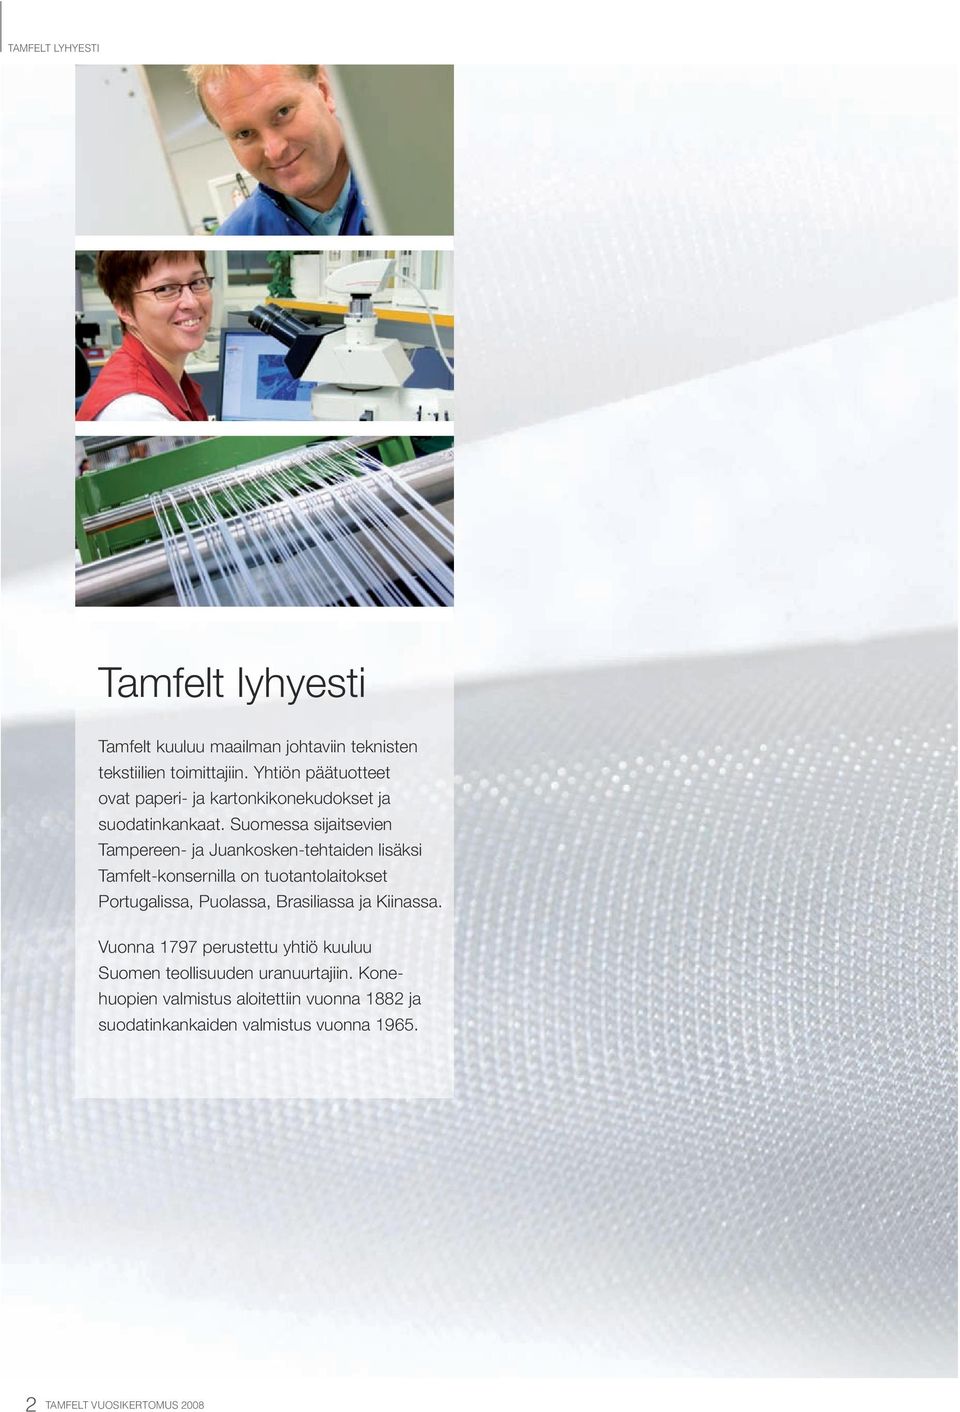 Suomessa sijaitsevien Tampereen- ja Juankosken-tehtaiden ja lisäksi lisäksi Tamfelt-konsernilla on tuotantolaitokset on Portugalissa, Puolassa, Brasiliassa ja Kiinassa.